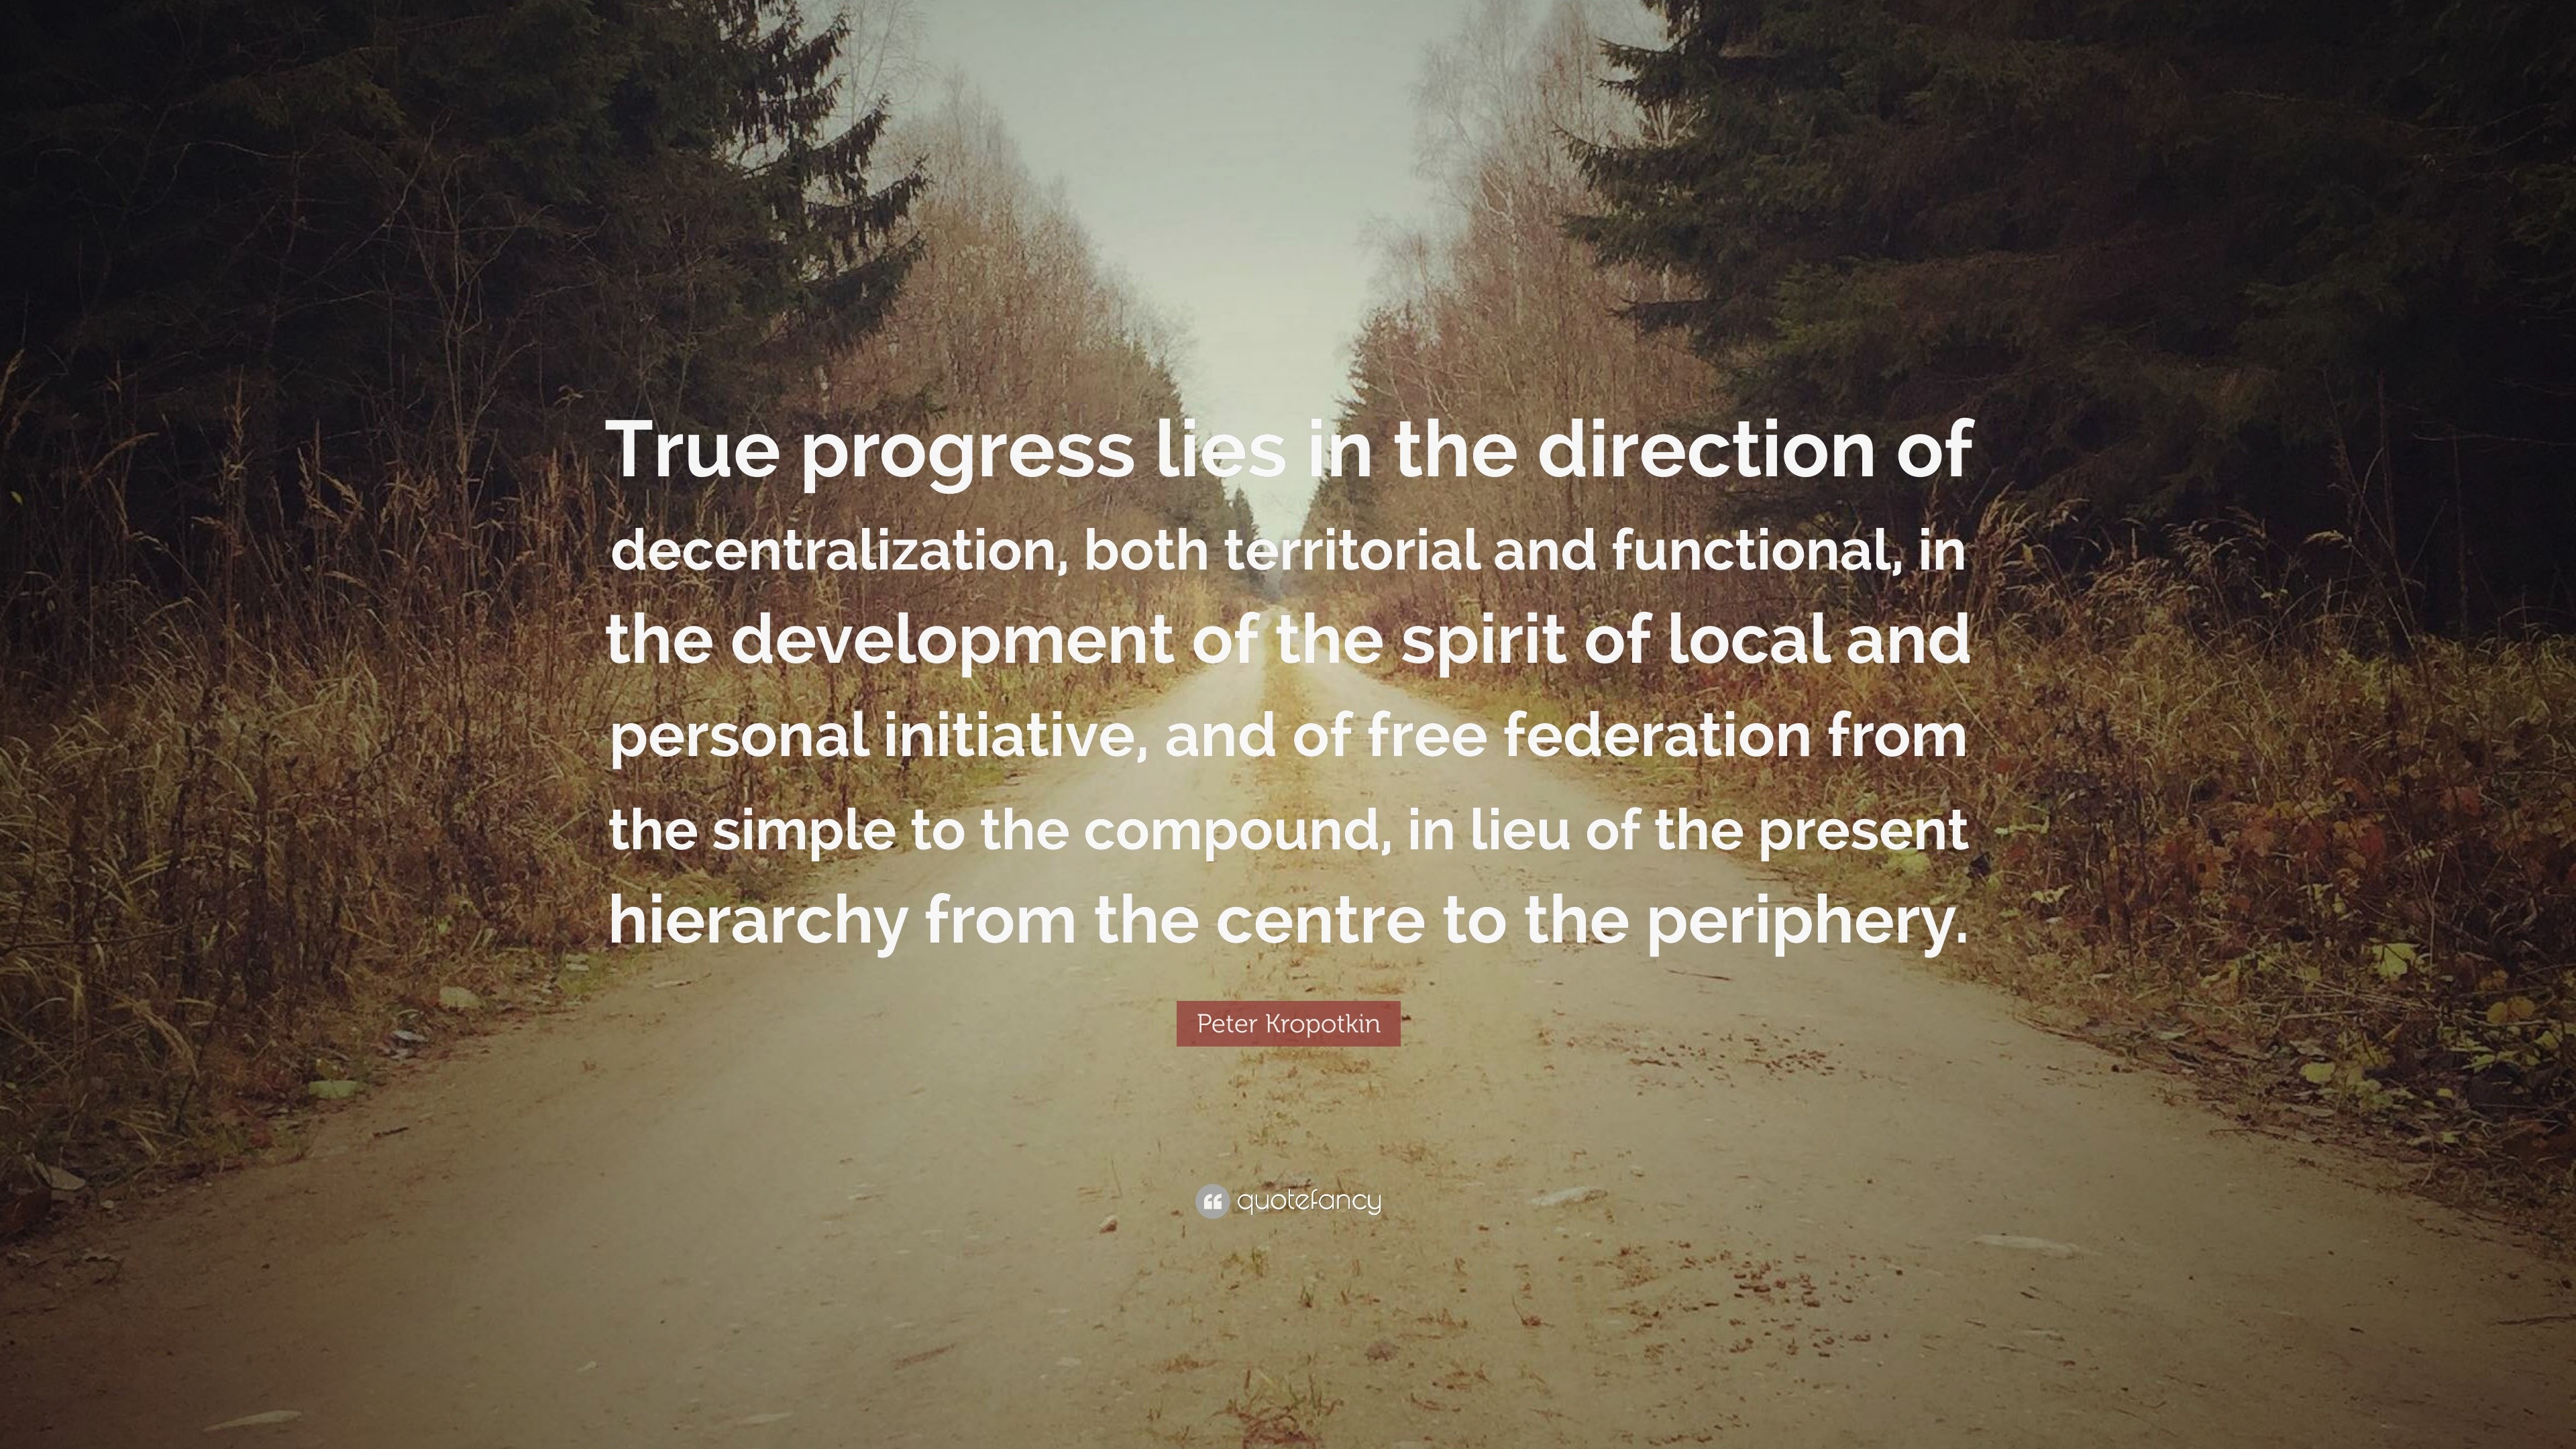 Peter Kropotkin Quote: “True progress lies in the direction of